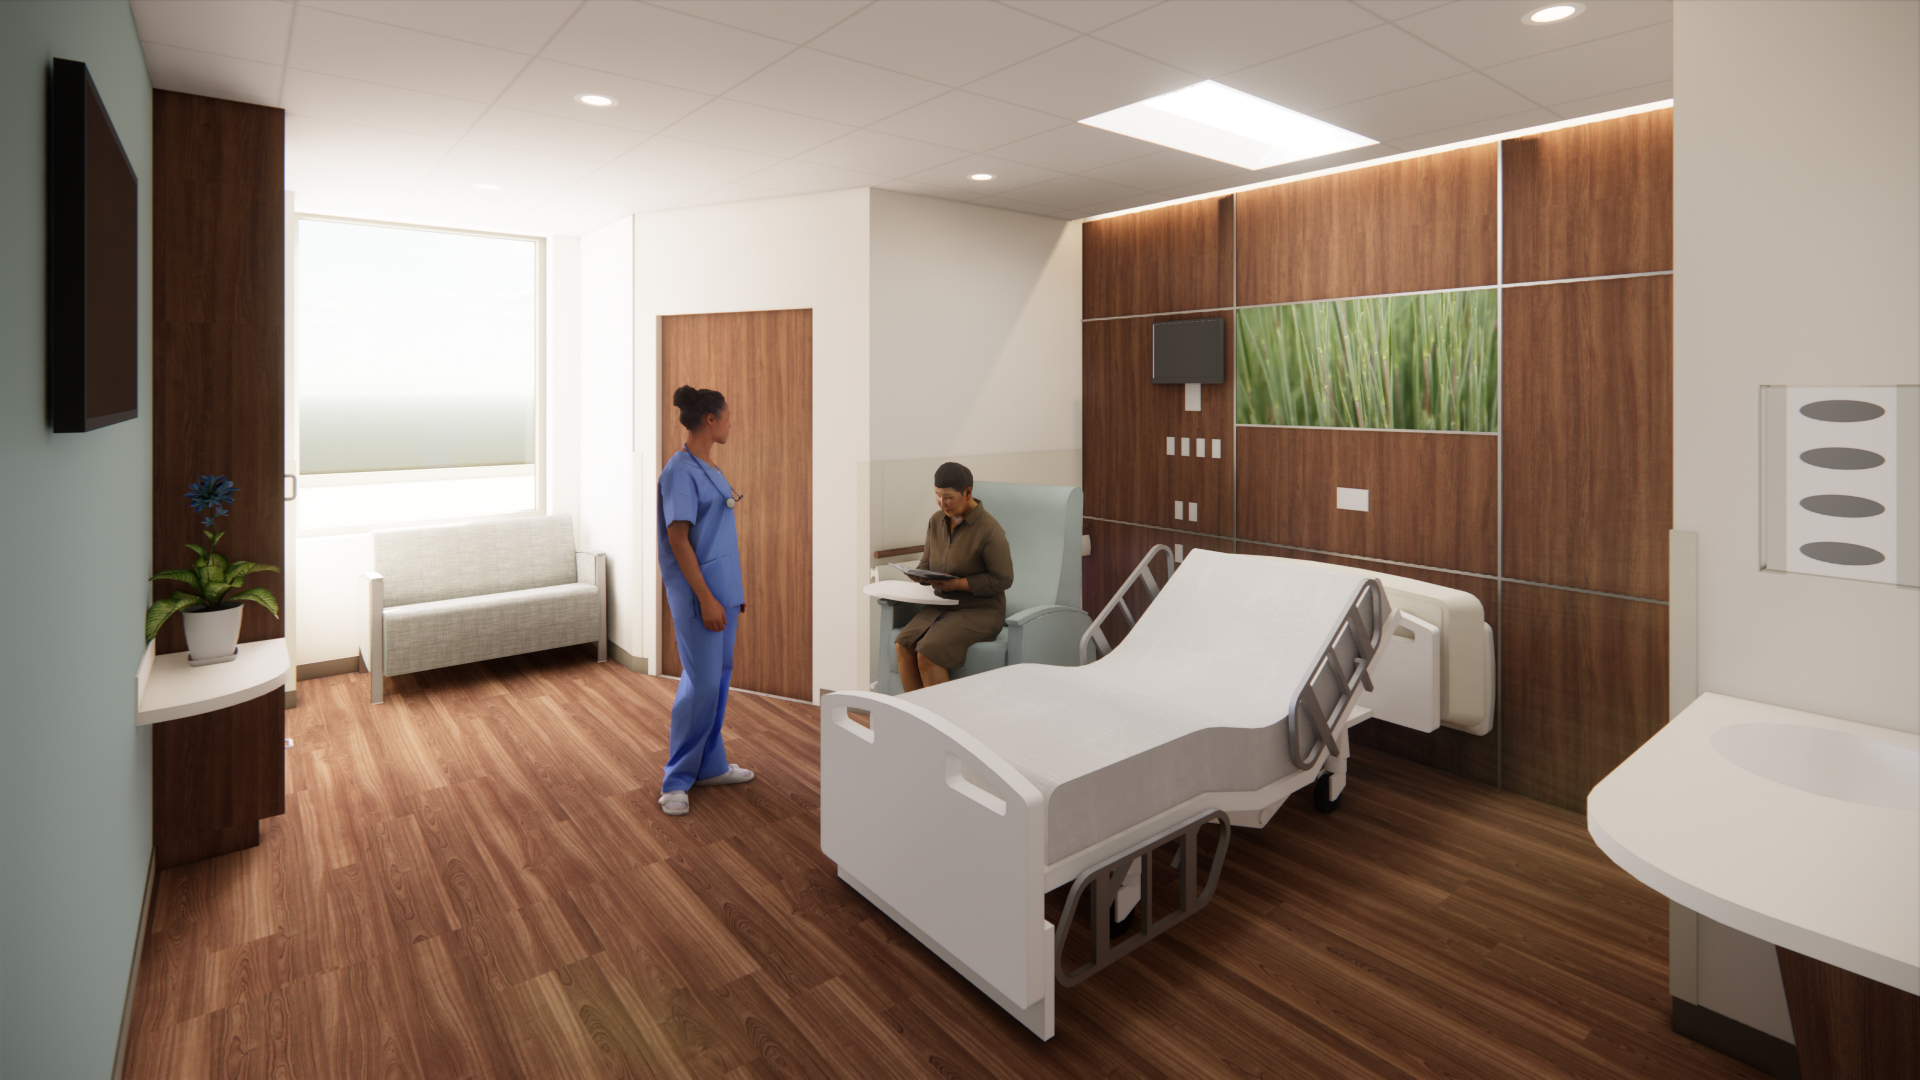 SHRH patient room rendering